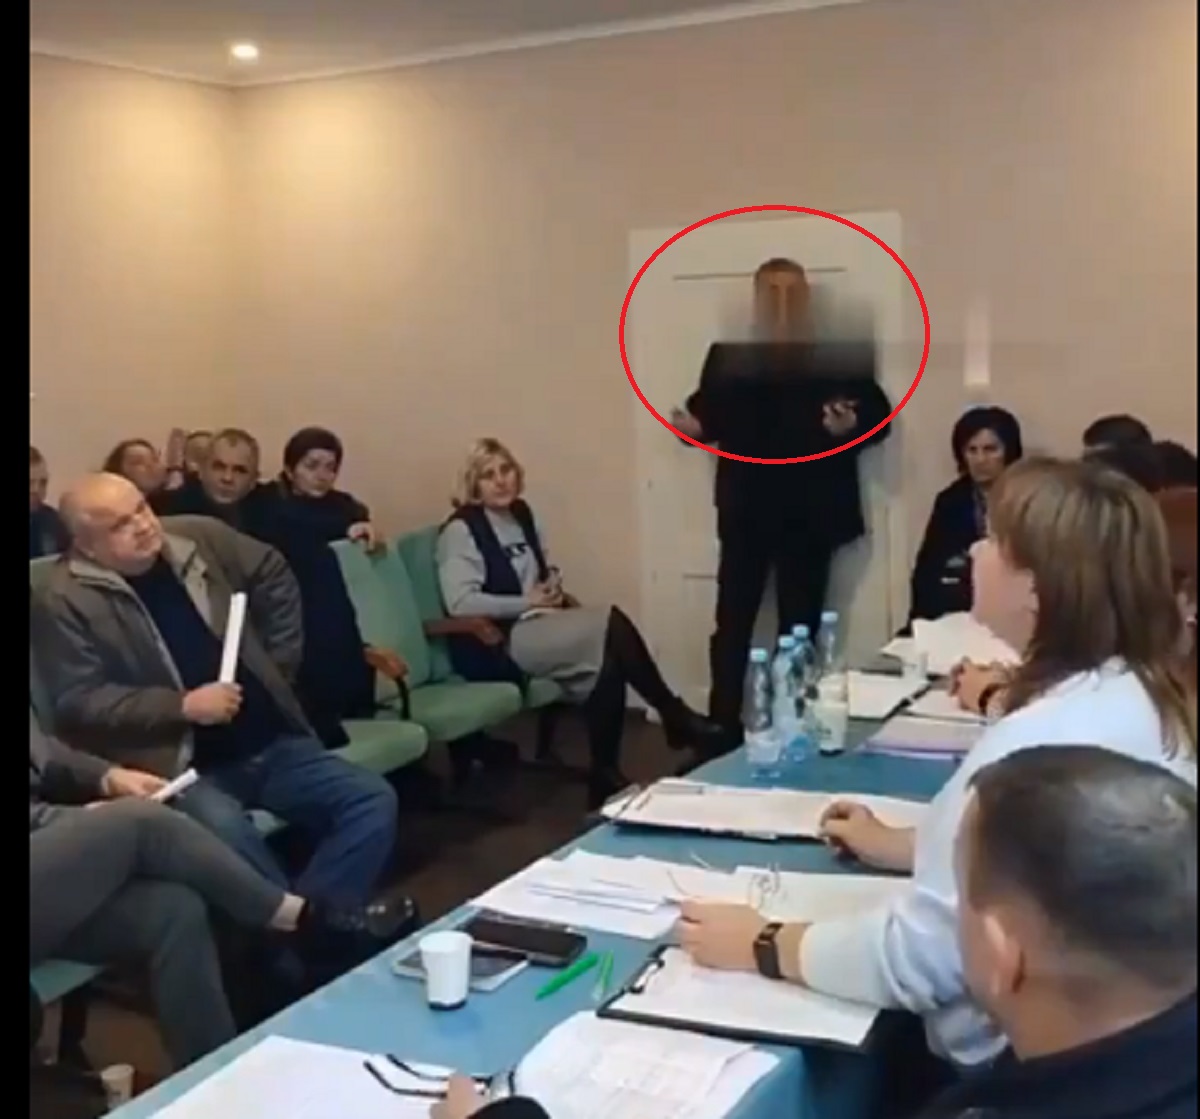 Duarr! Anggota Dewan Ukraina Lempar Granat saat Rapat, 1 Tewas dan 26 Luka-luka